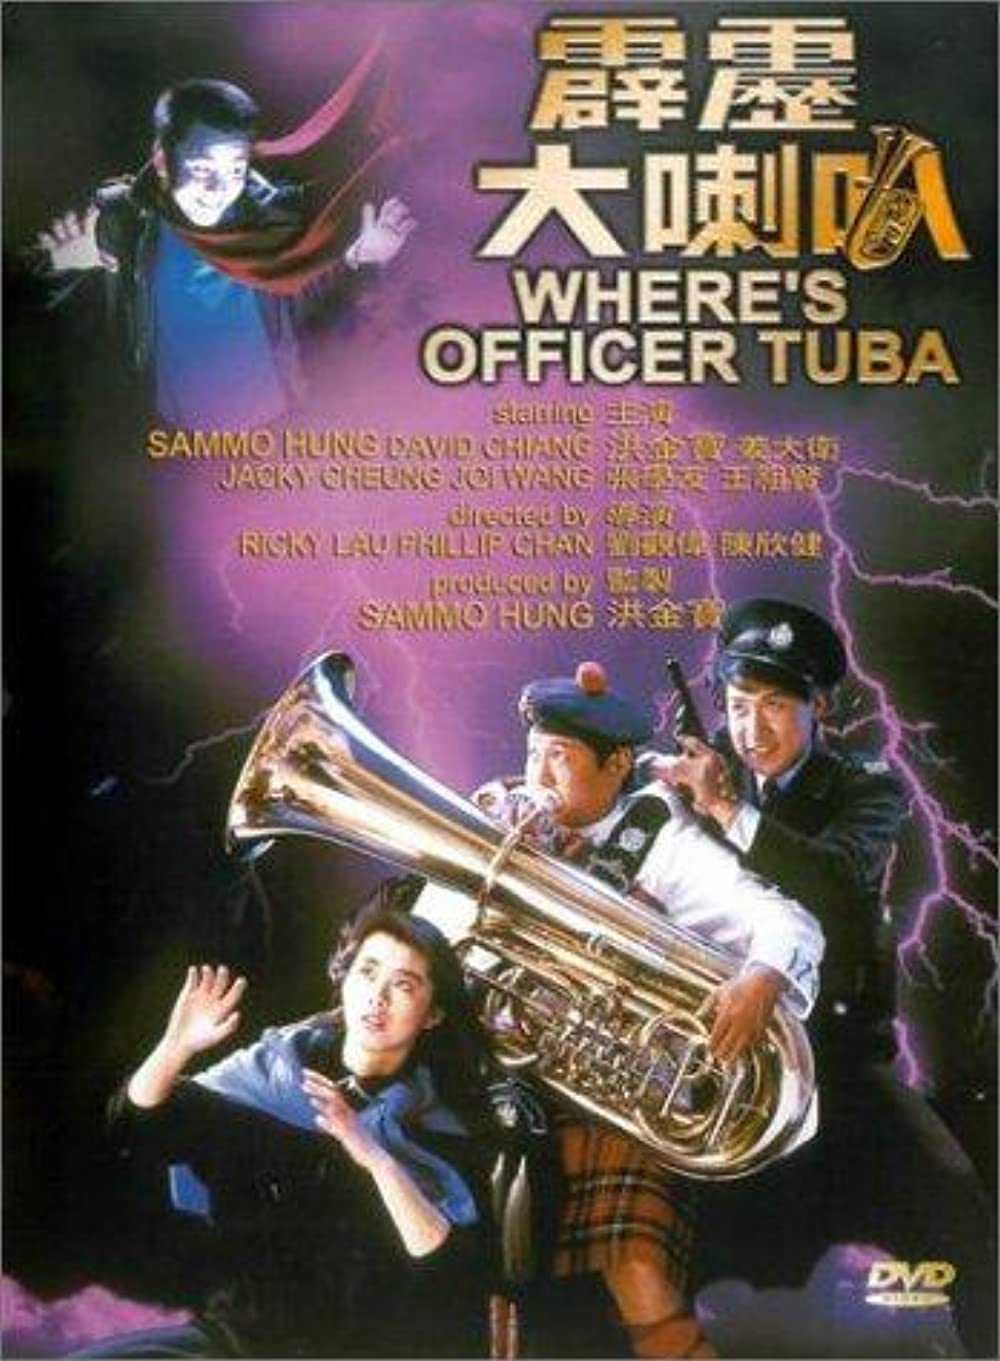 Phích lịch đại lạc bá - Where's officer tuba